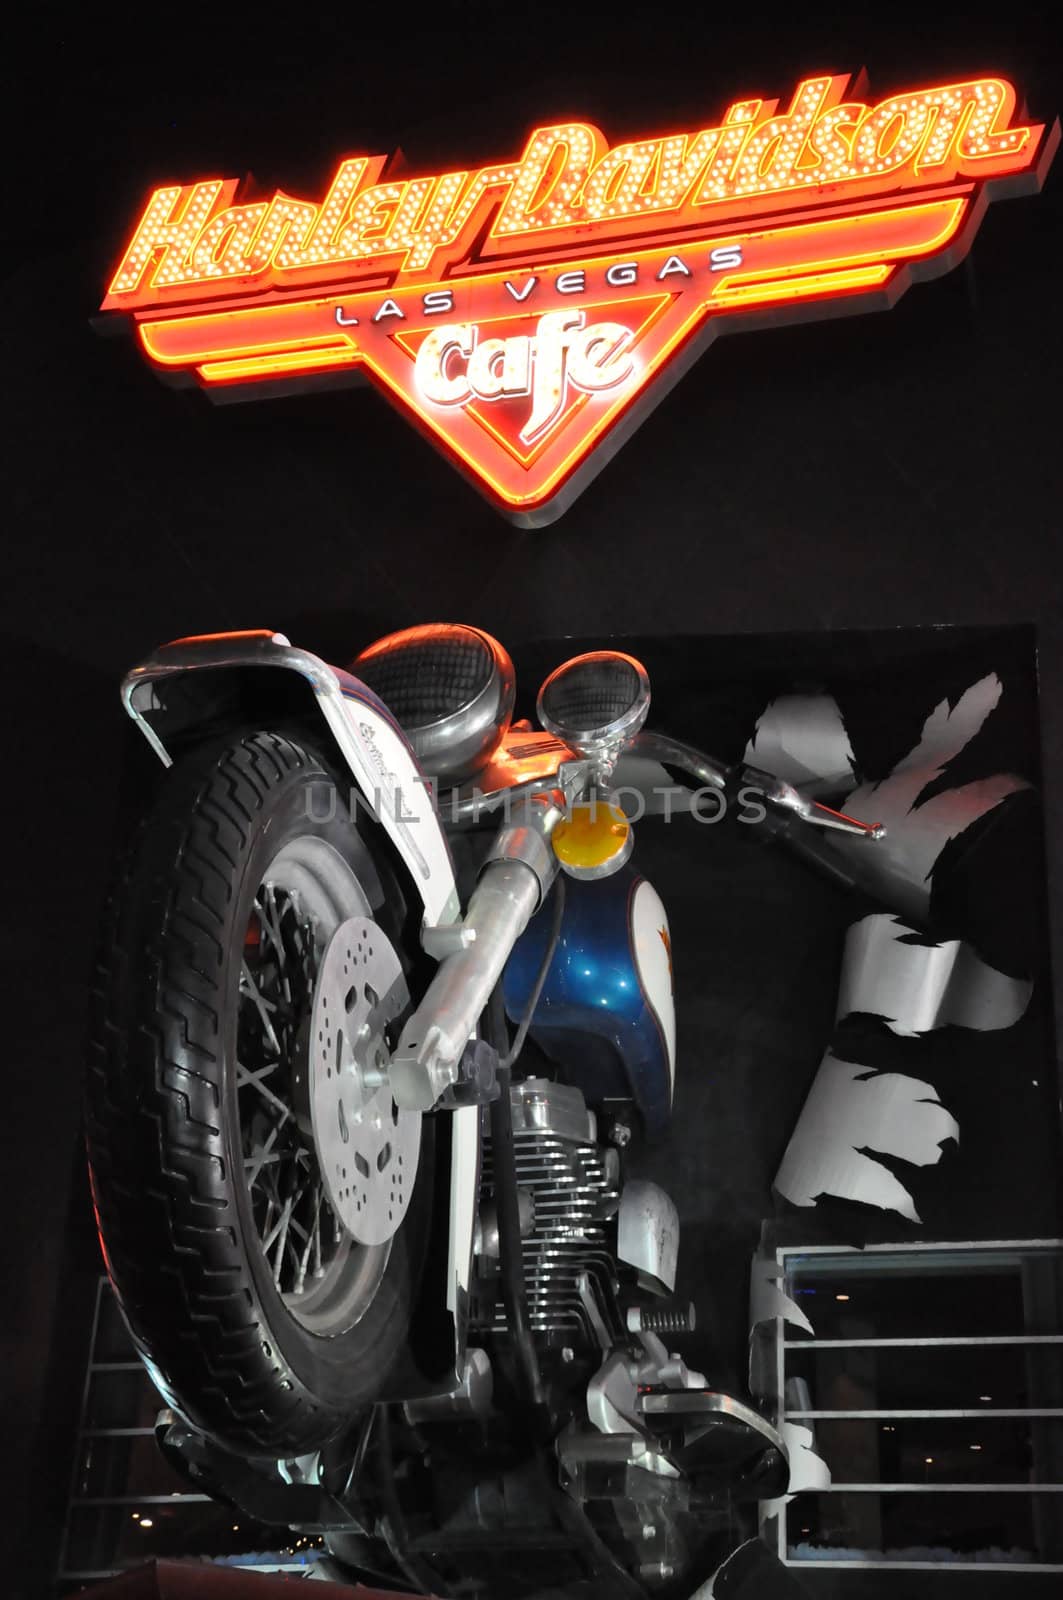 Harley Davidson Cafe in Las Vegas by sainaniritu